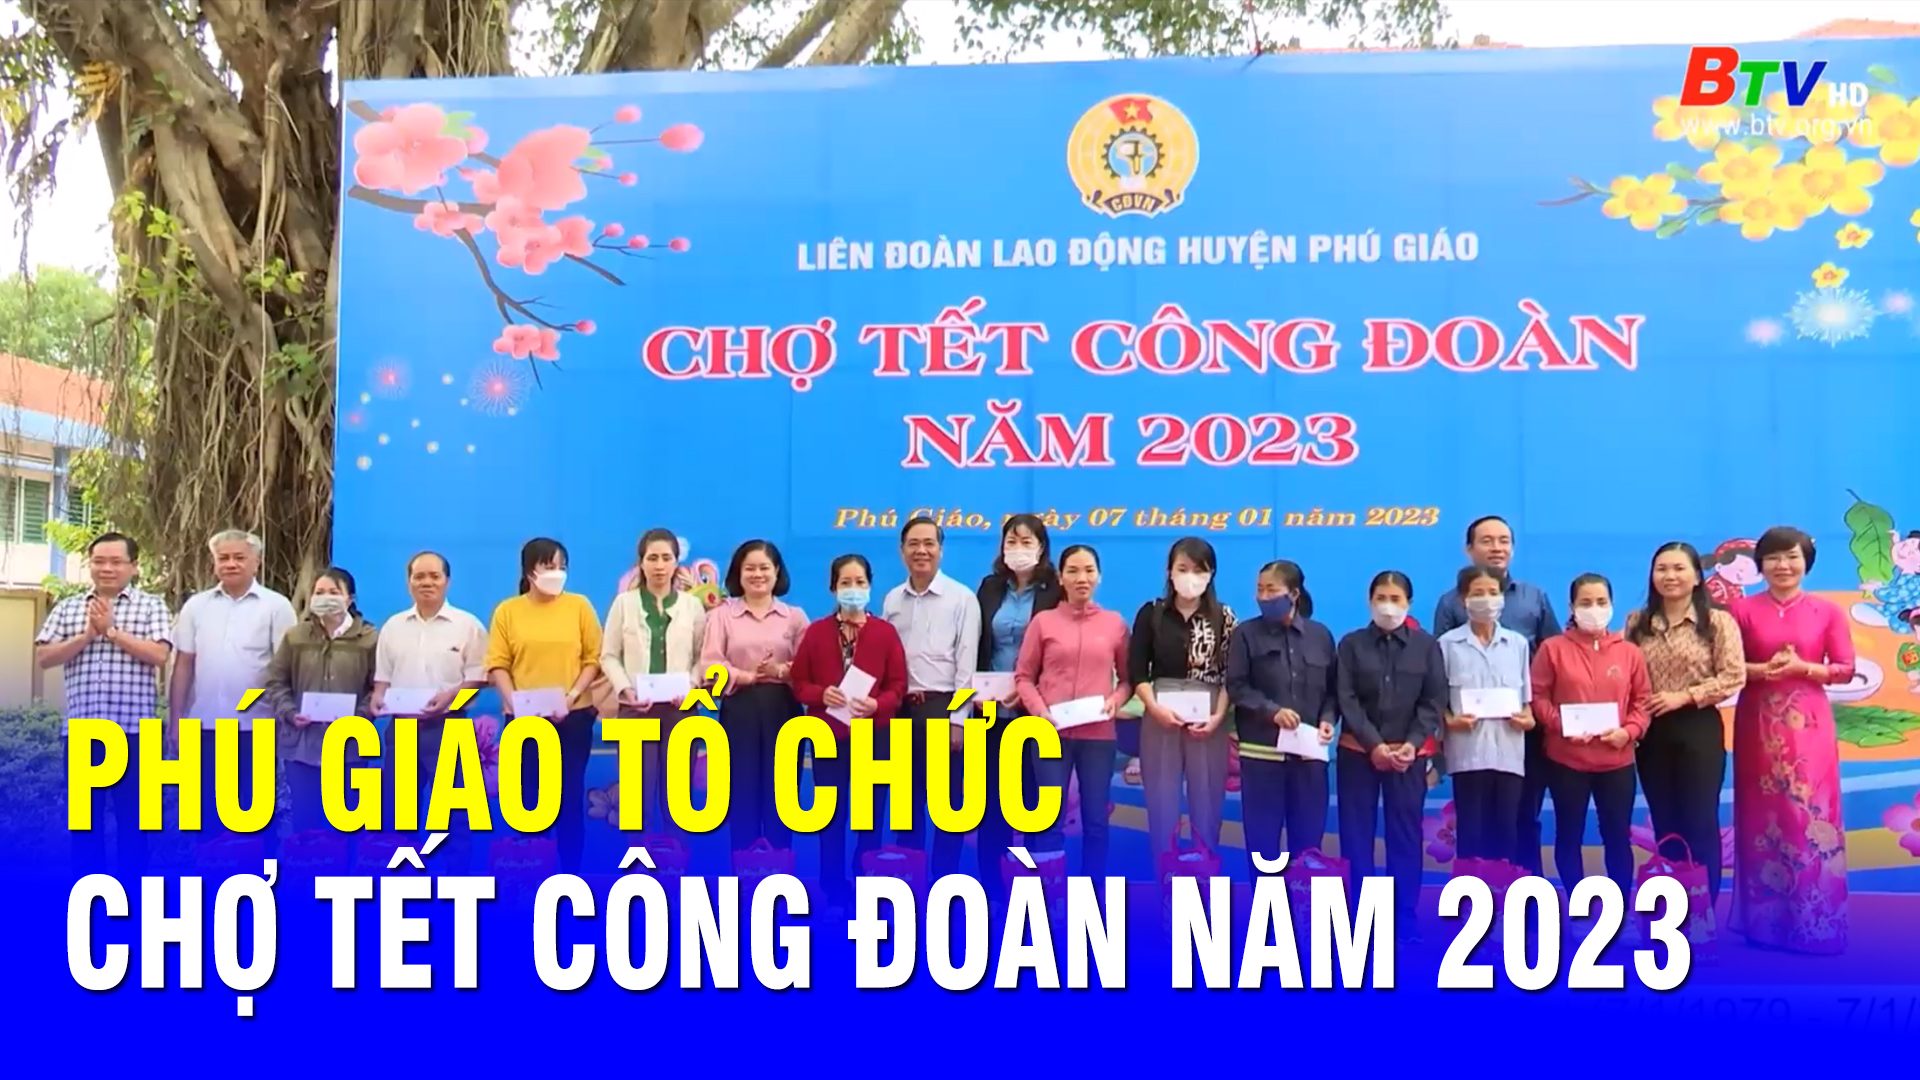 Phú Giáo tổ chức chợ Tết Công đoàn năm 2023